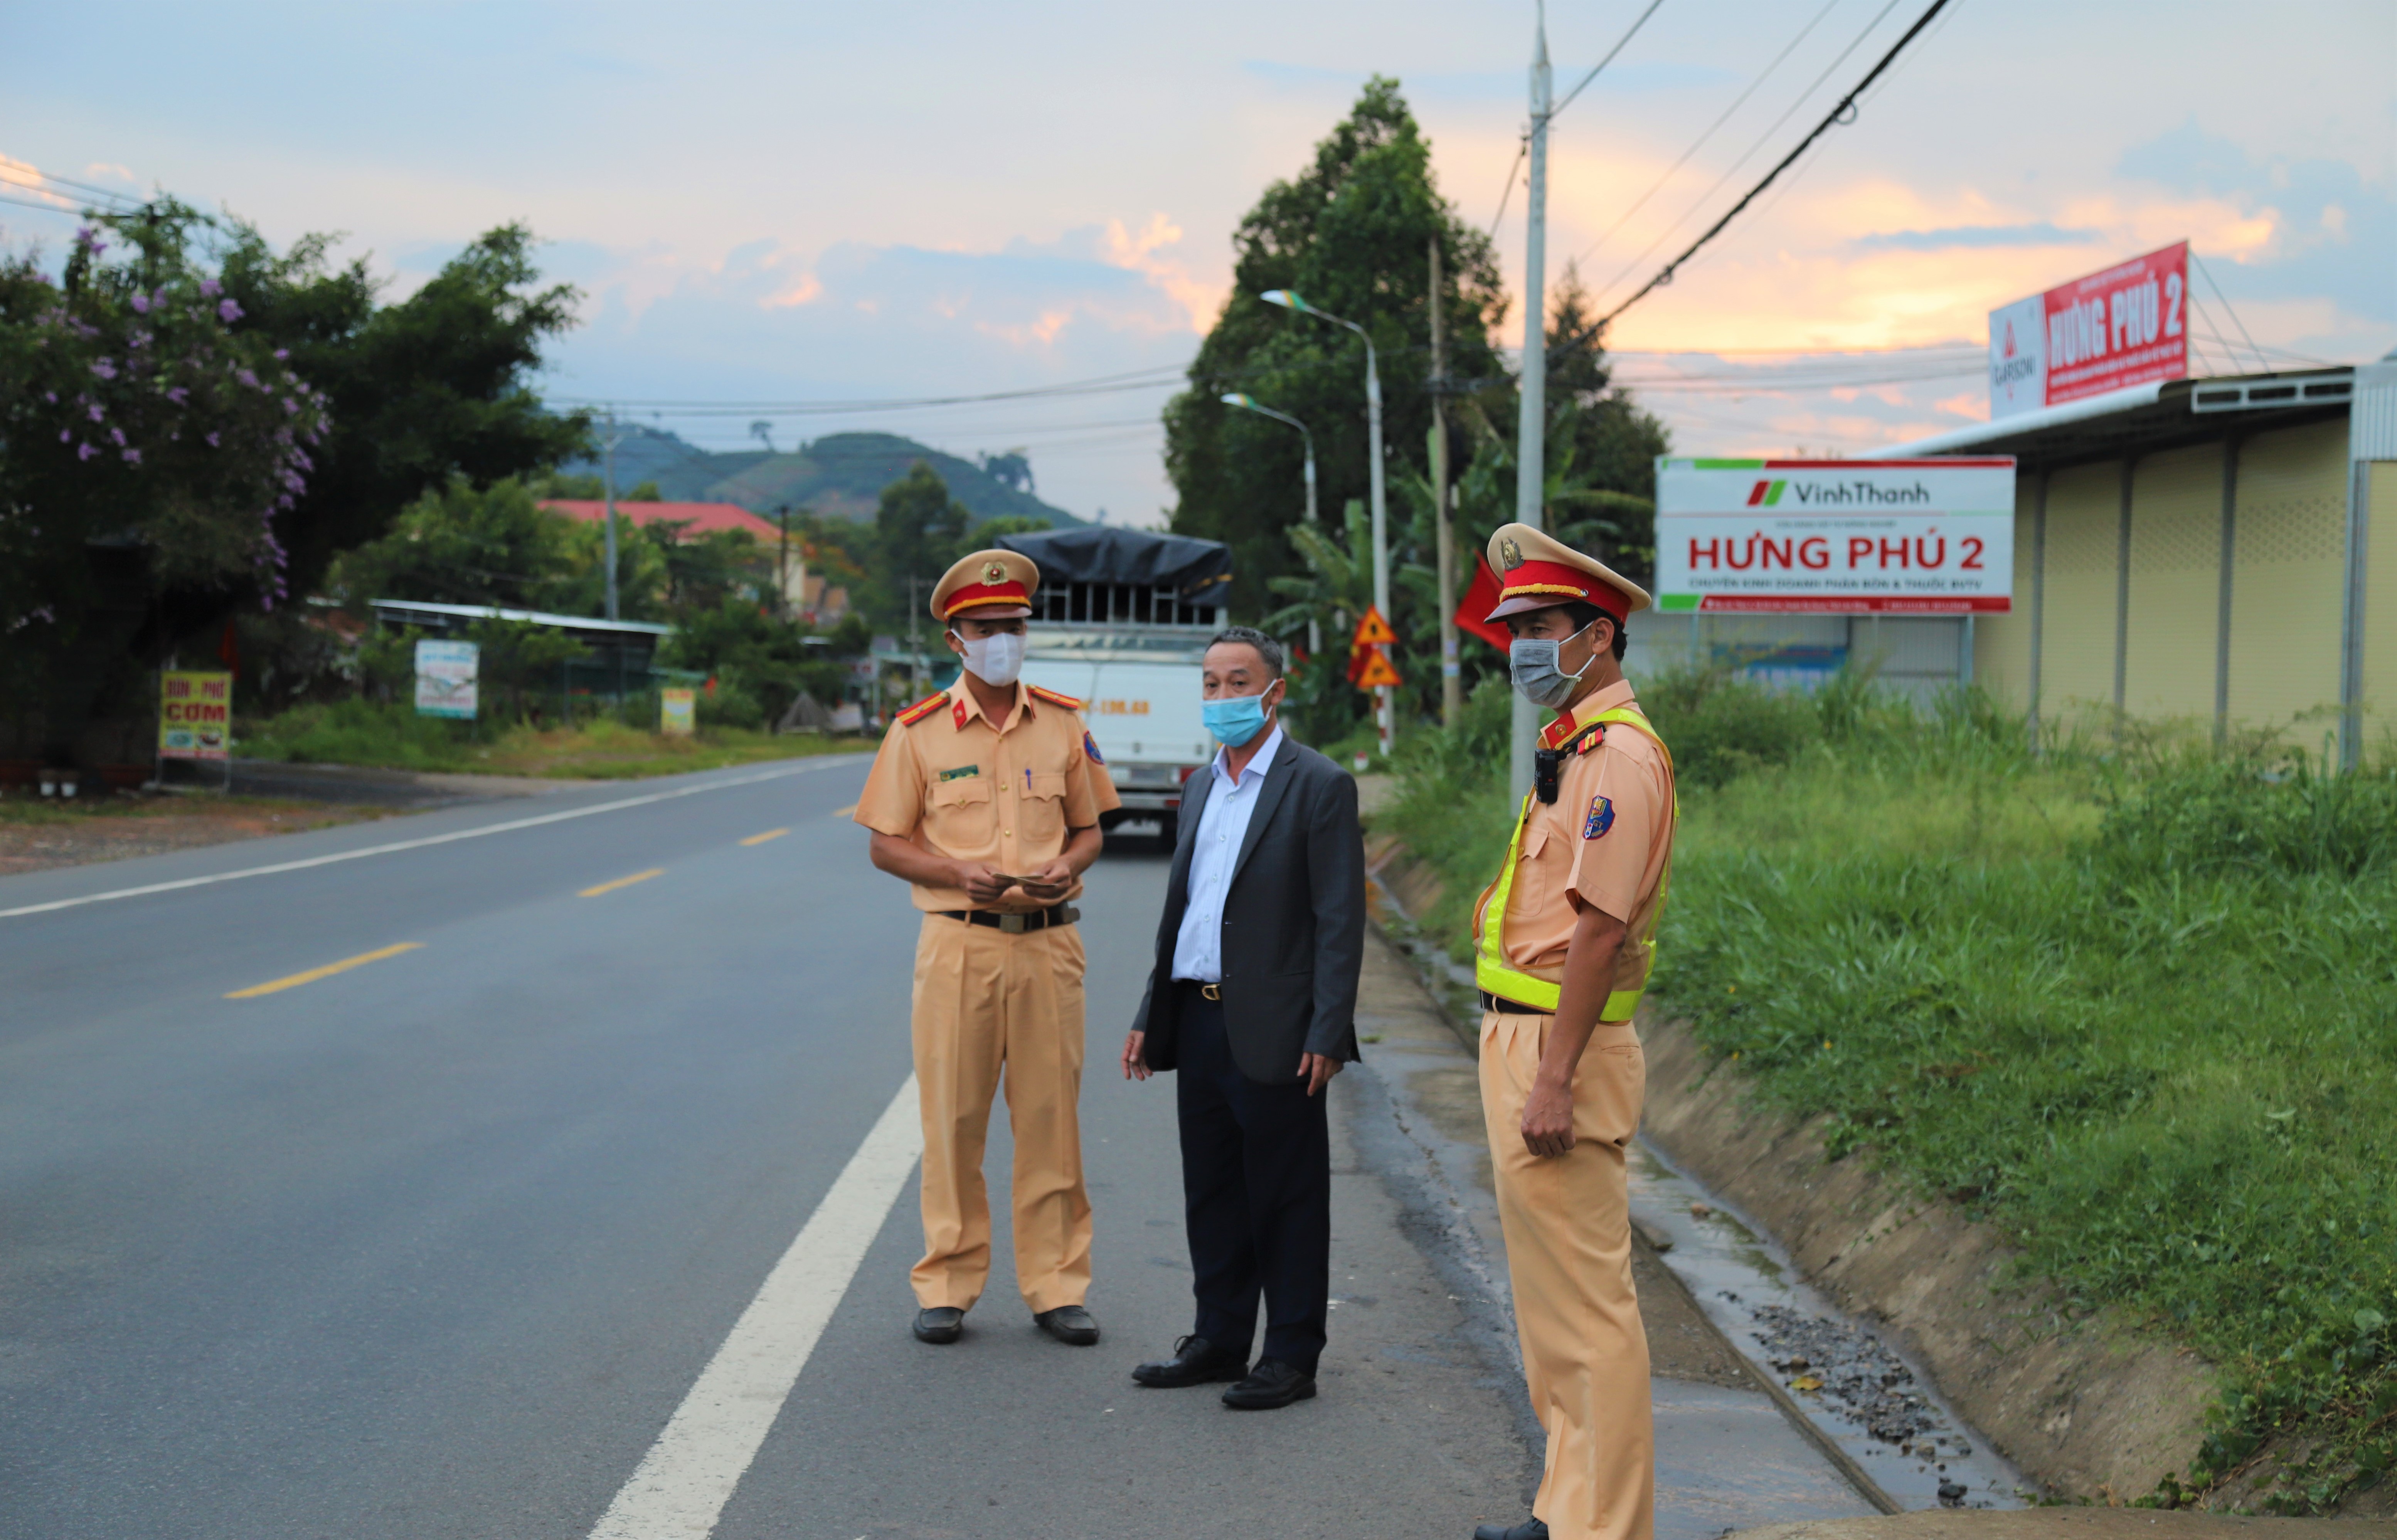 Chủ tịch UBND tỉnh Lâm Đồng chỉ đạo xử lý nghiêm 2 xe tải vượt ẩu trên đèo Bảo Lộc